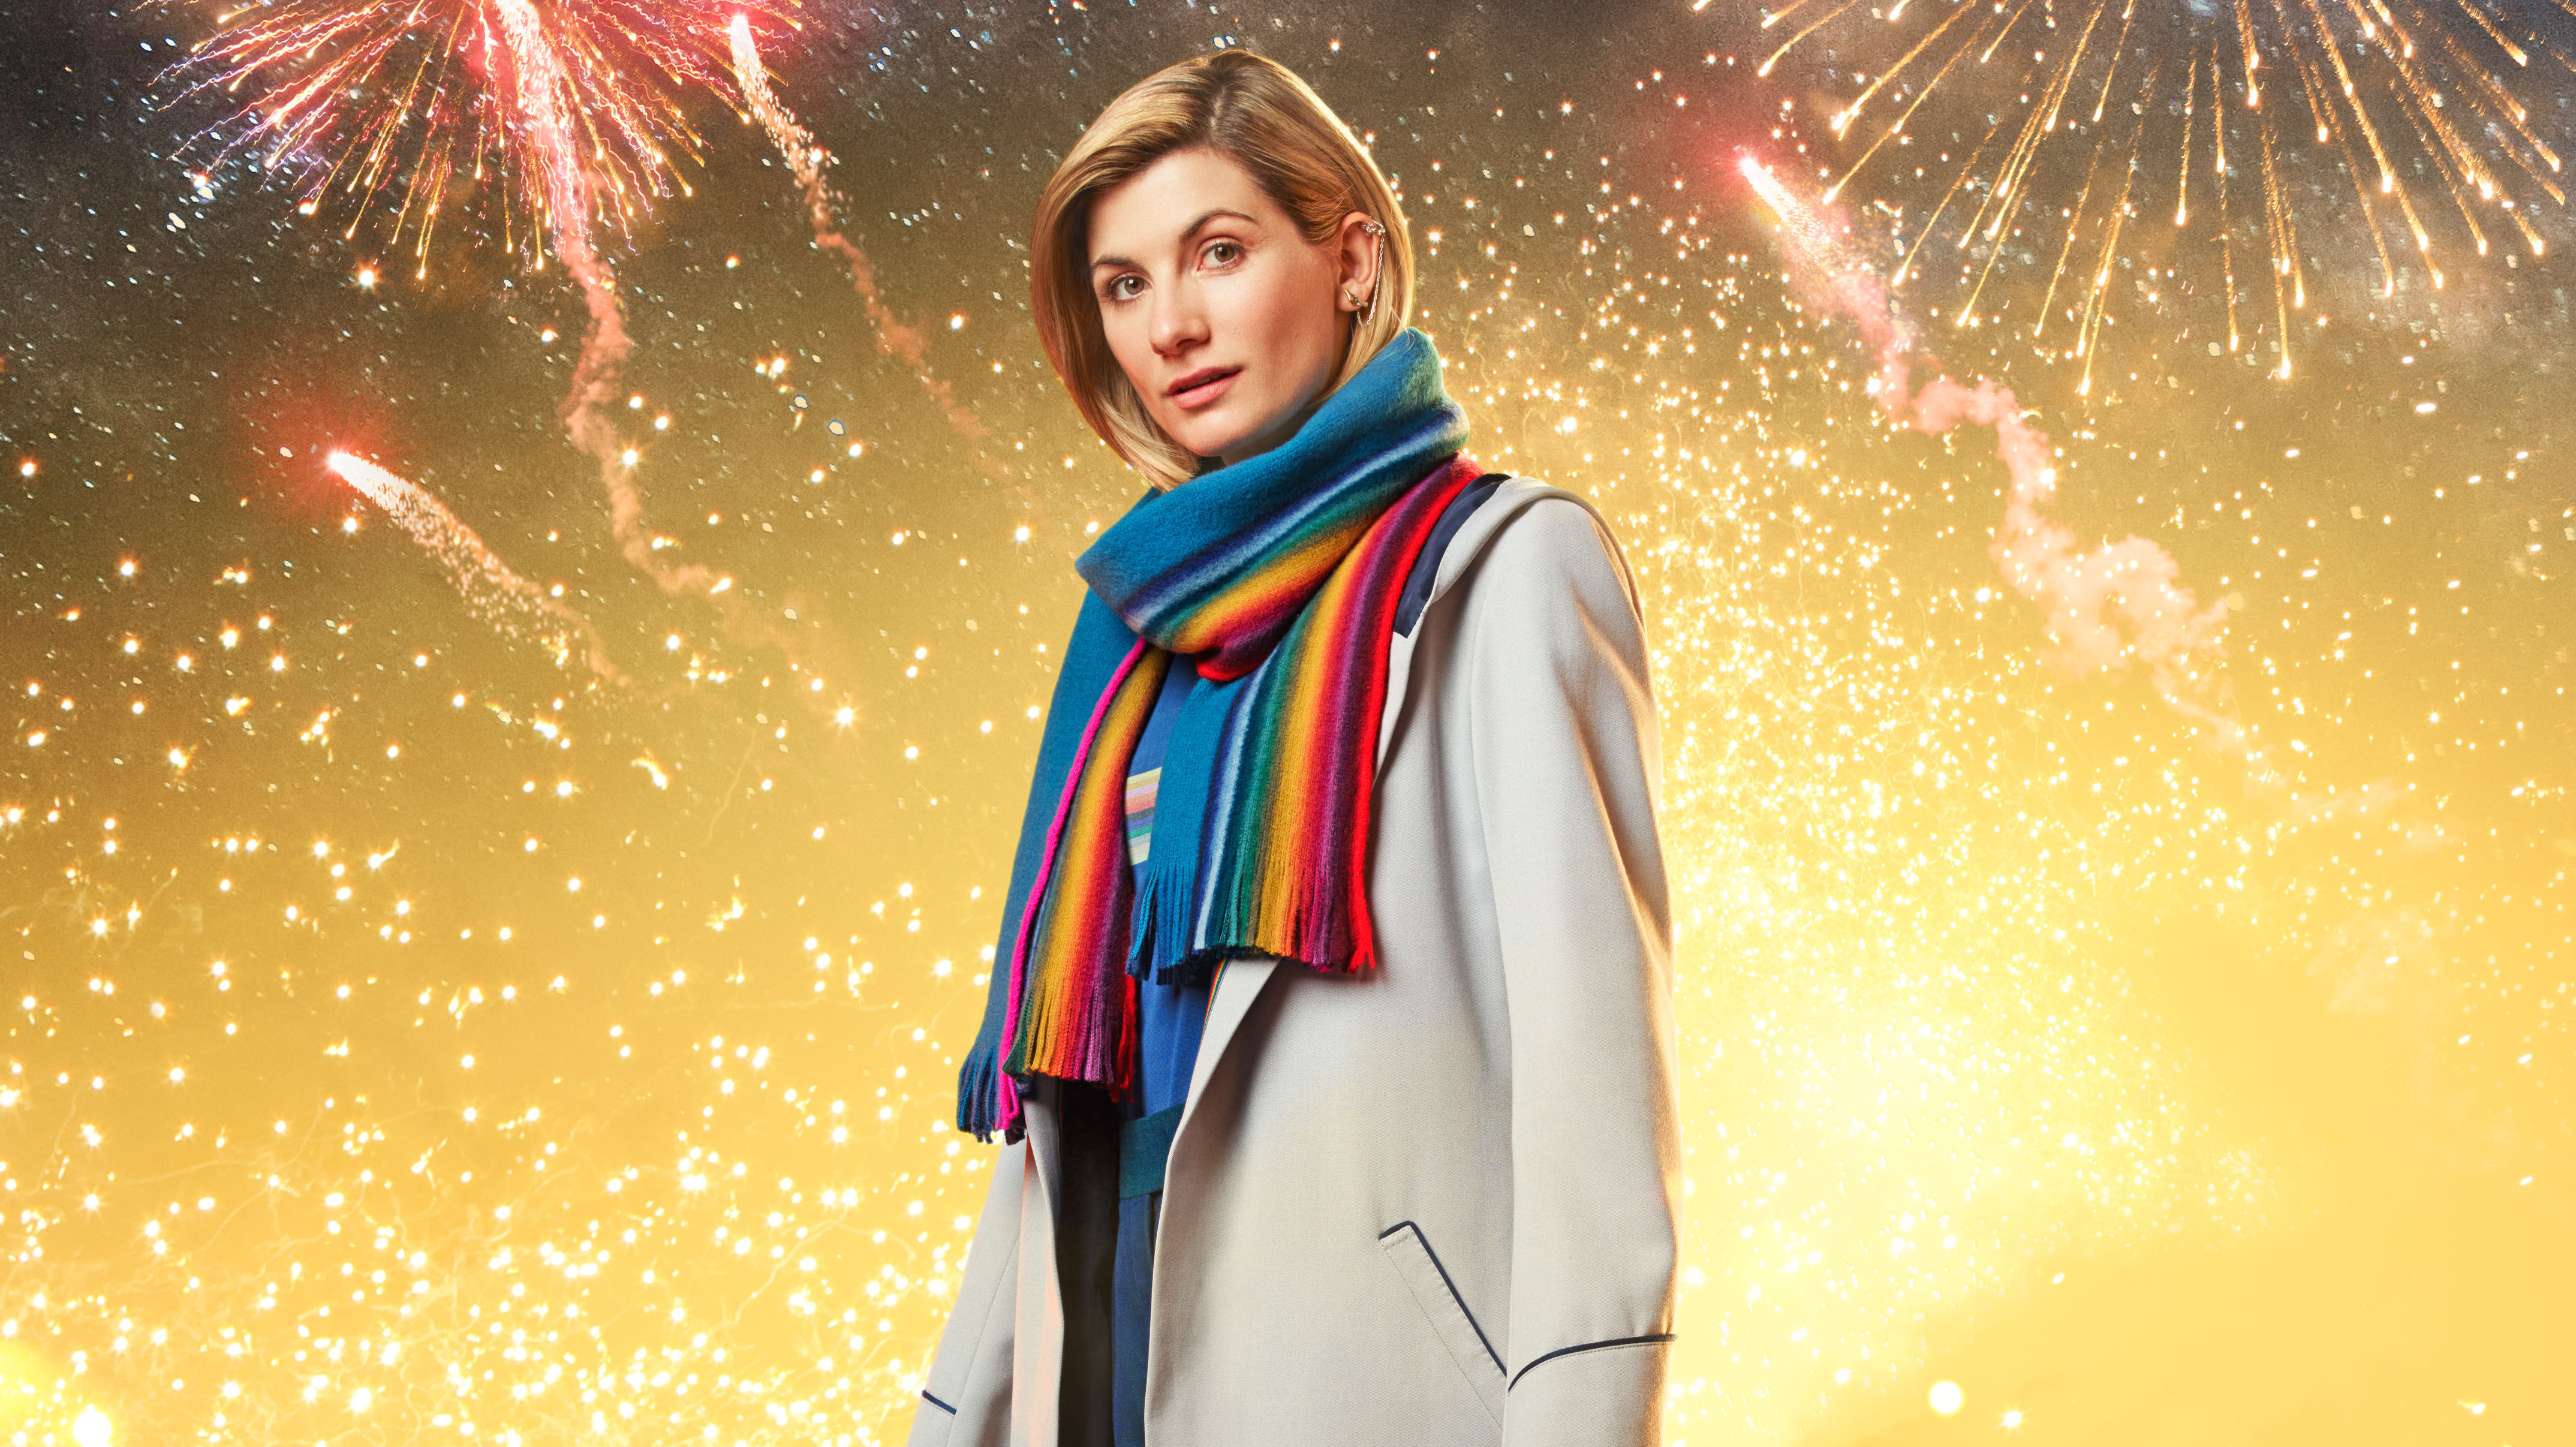 doctor who wallpaper,fireworks,sparkler,event,sky,holiday